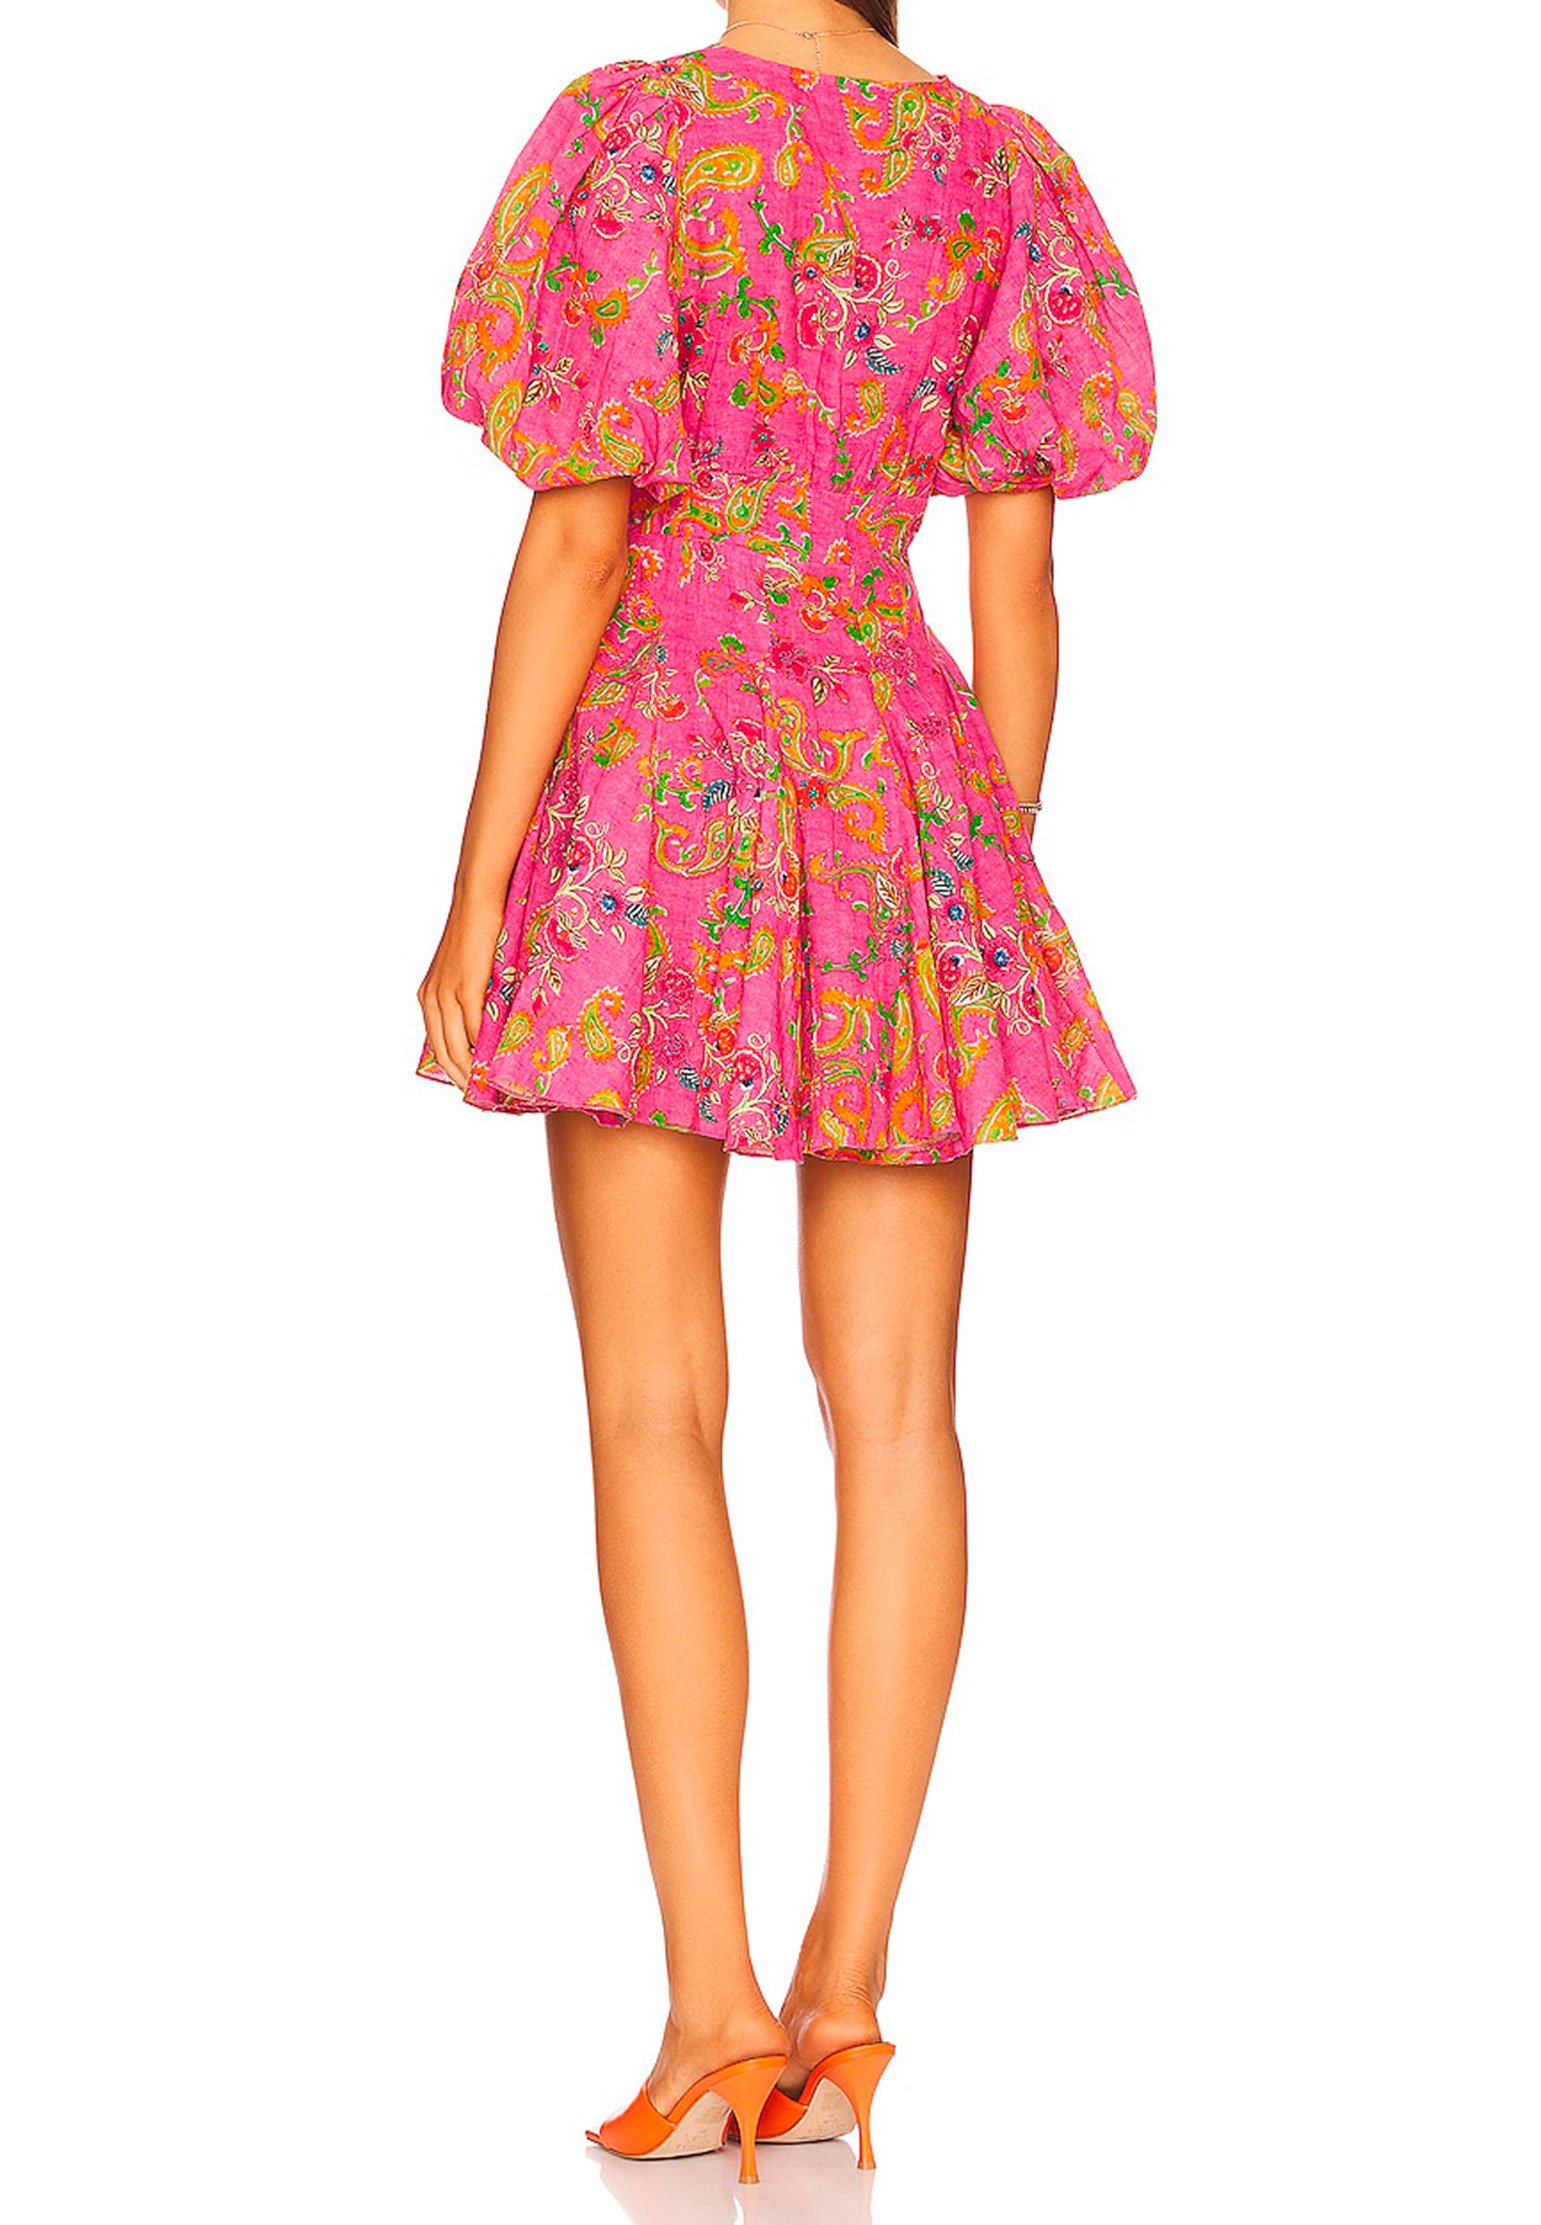 Dress HEMANT&NANDITA Color: fuchsia (Code: 1121) in online store Allure